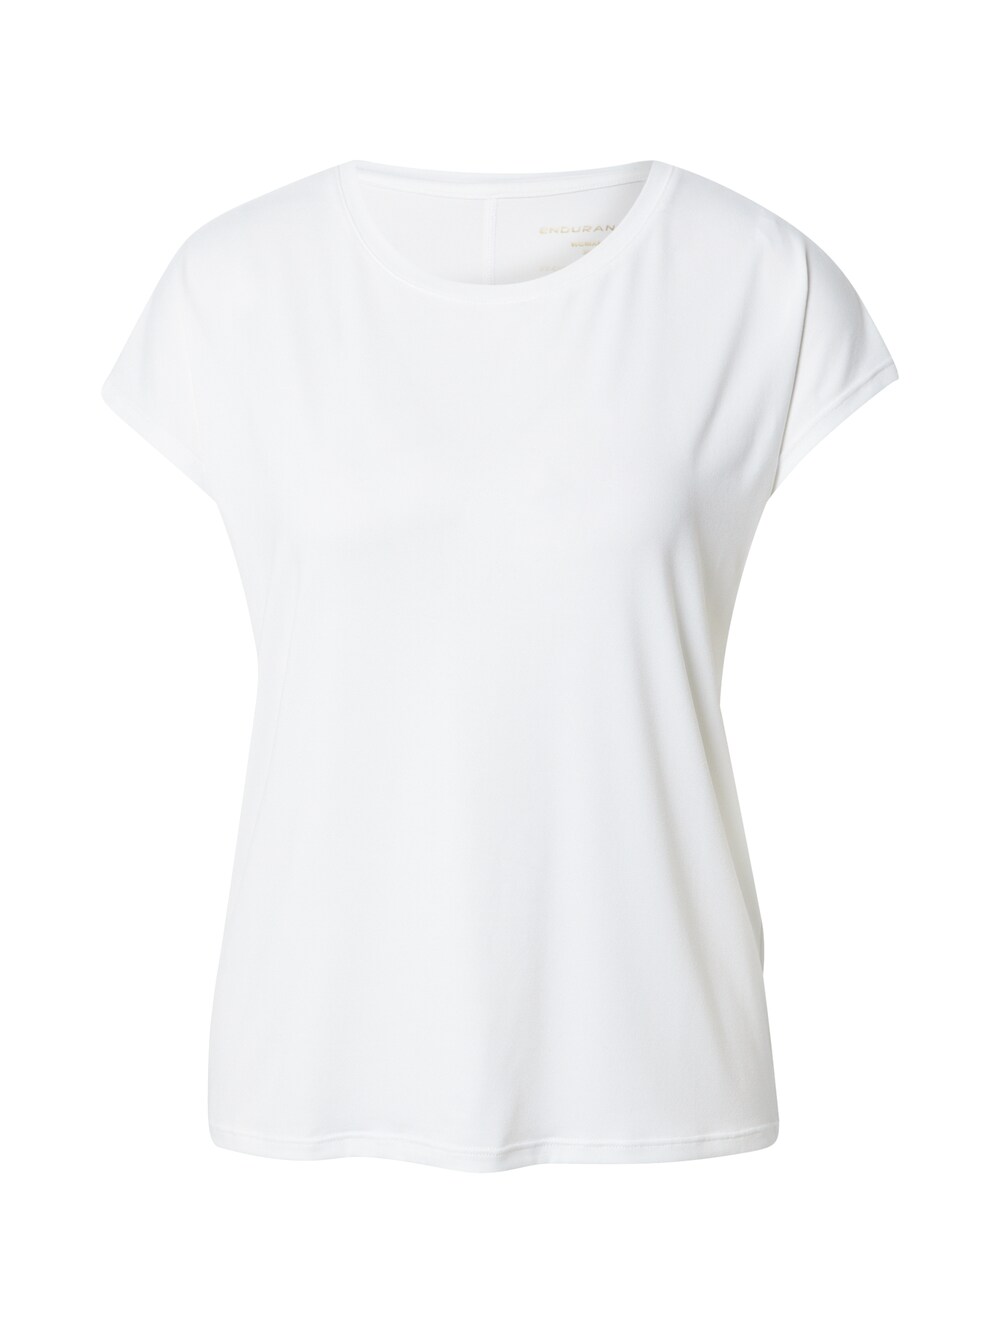 Рубашка для выступлений ENDURANCE, белый рубашка для выступлений endurance зеленый